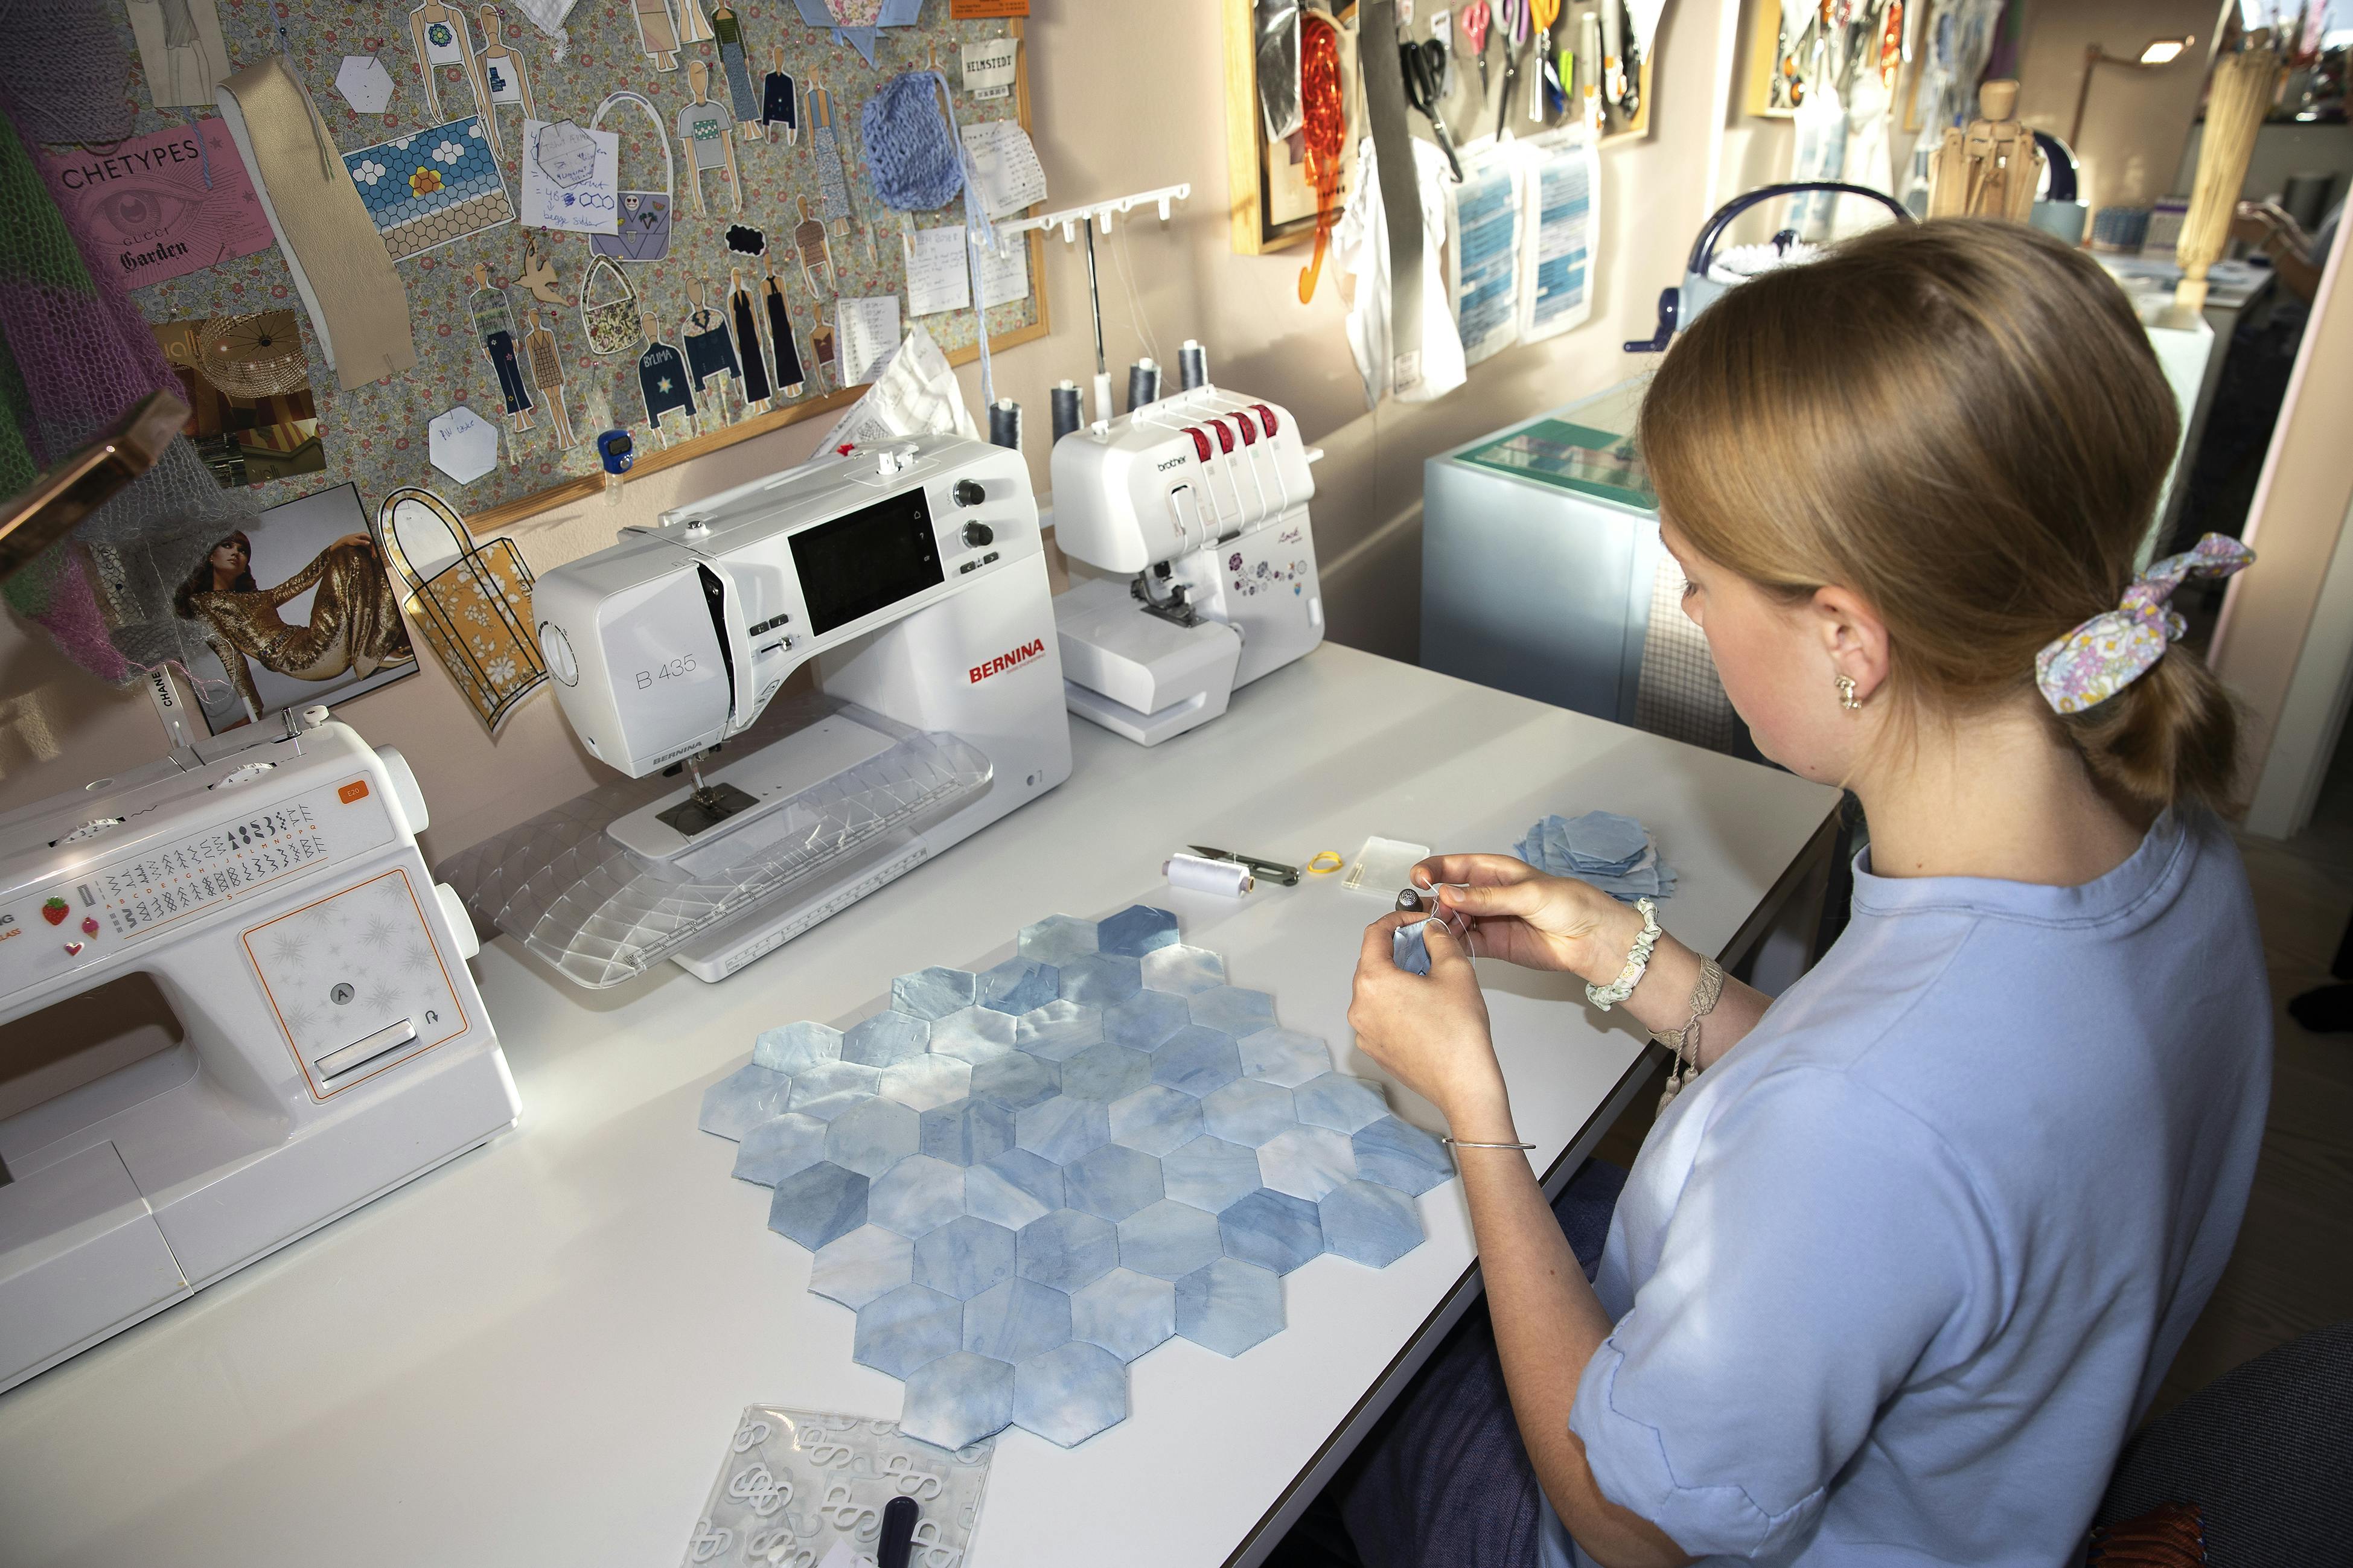 På sit hobbyværelse er Emma ved at sy et patchworkindkøbsnet i blå nuancer. Det er resultatet af et projekt i skolen, hvor hun skulle farve et gammelt, hvidt lagen med indigofarve.